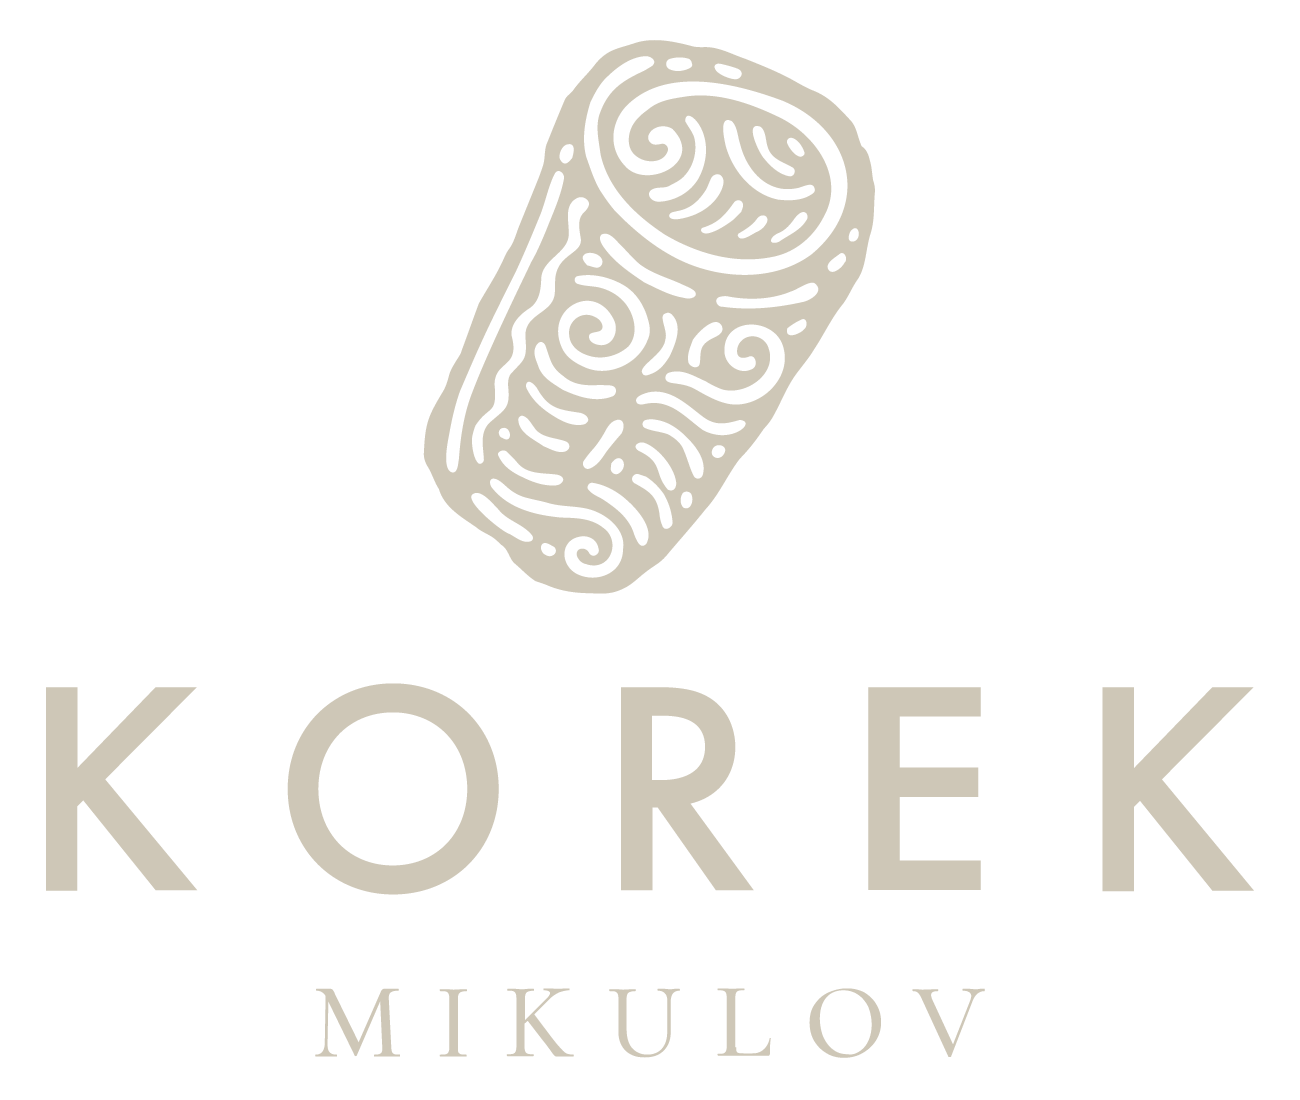 korek logo 02